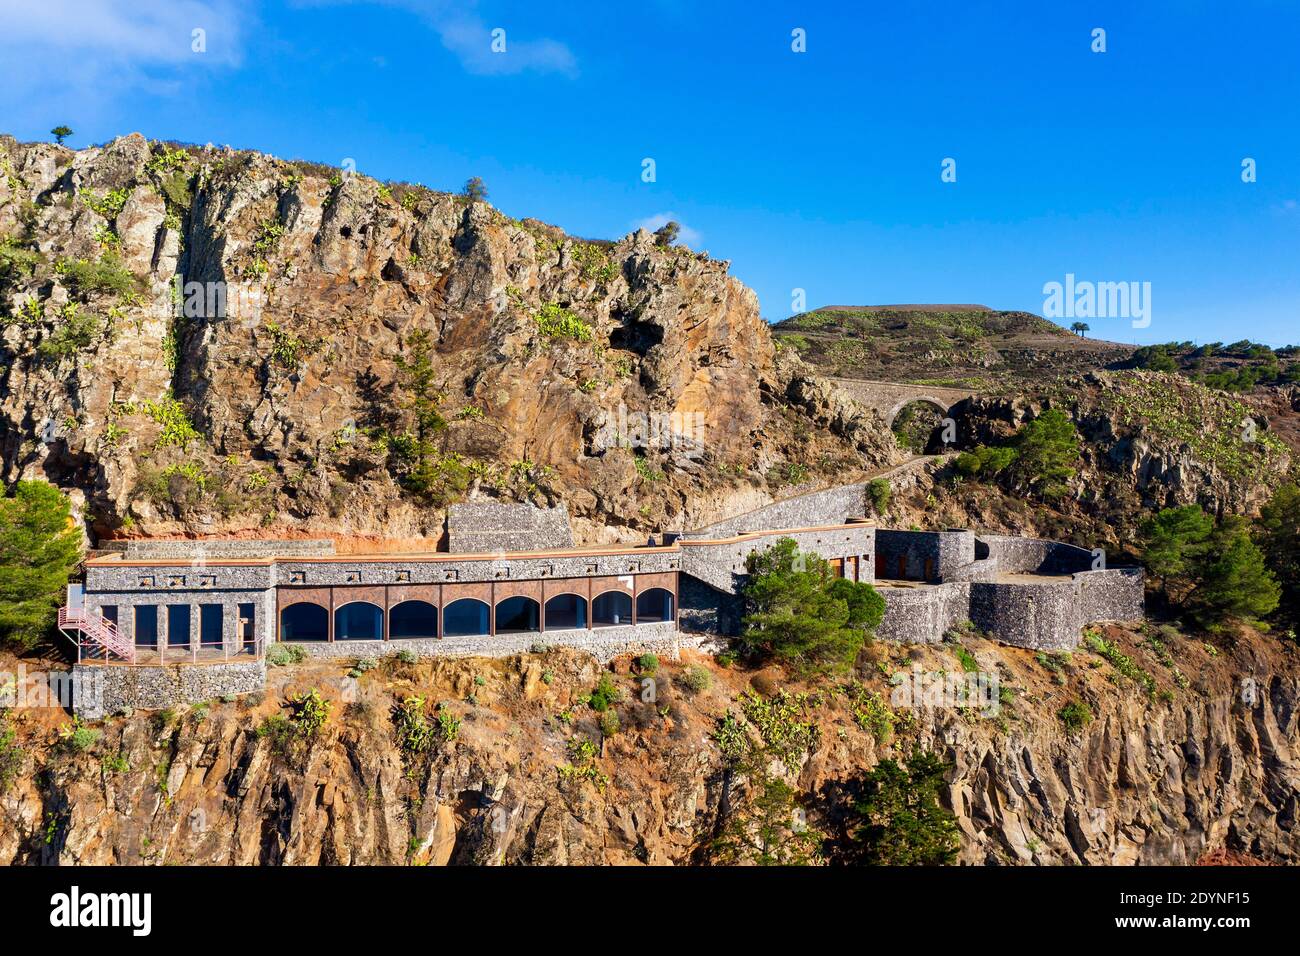 Mirador Ermita del Santo cerca de Arure, Valle Gran Rey, imagen de drones, la Gomera, Islas Canarias, España Foto de stock